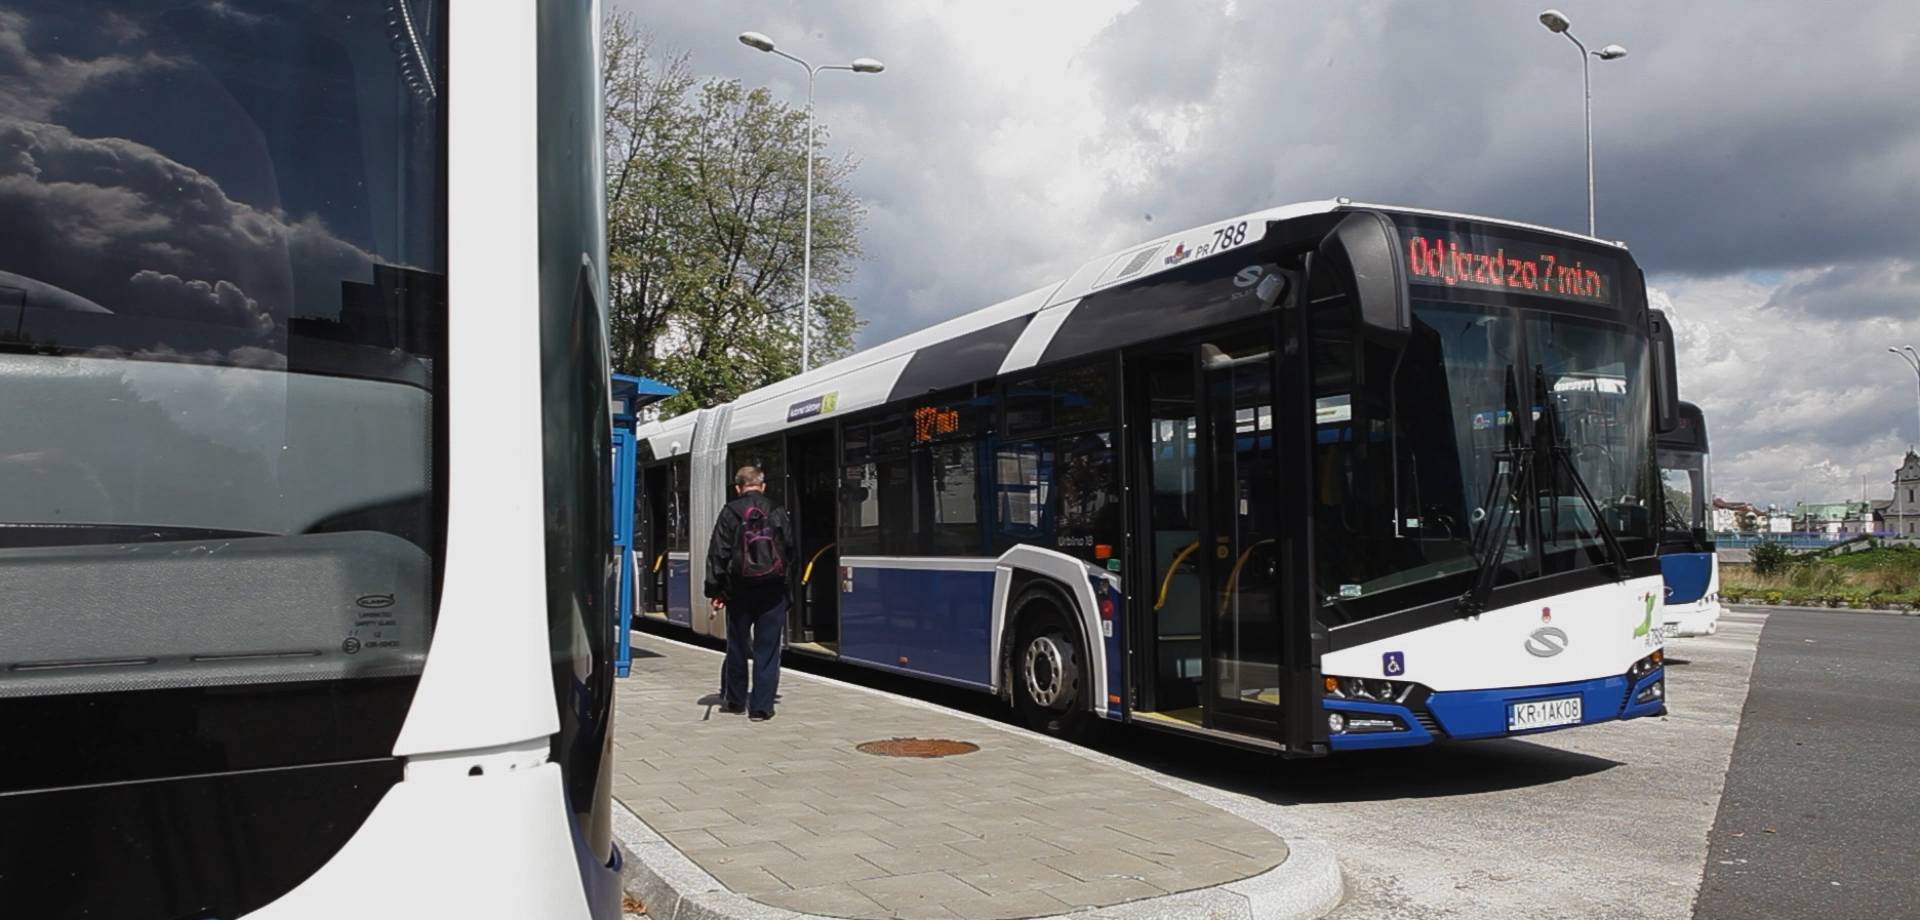 "Najtrudniejszy okres dla komunikacji miejskiej". Czy 25 autobusów załatwi sprawę?